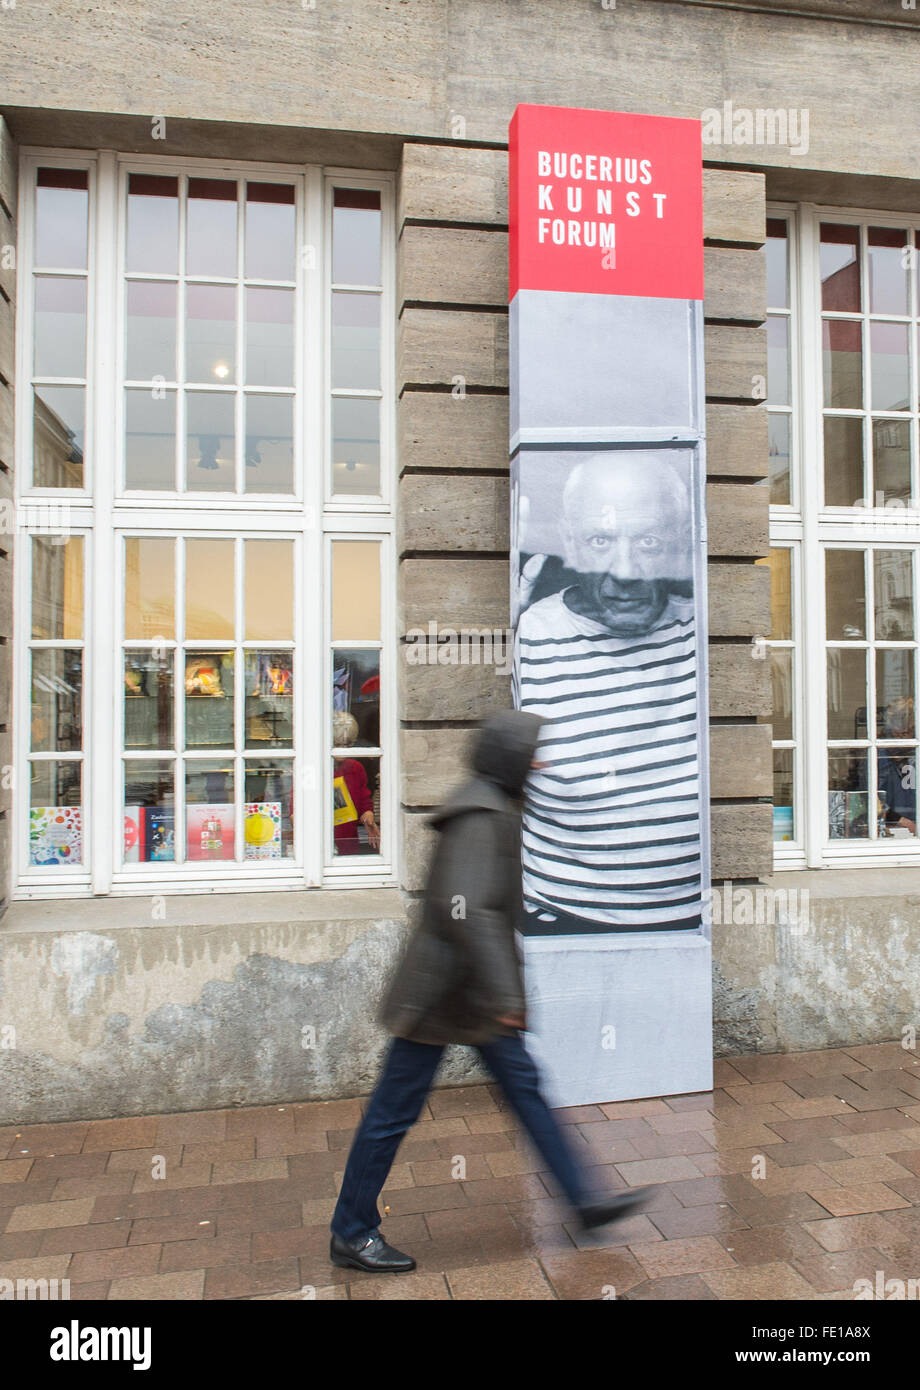 Hambourg, Allemagne. 1er février, 2016. Un homme marche par une bannière annonçant l'exposition Picasso à l'extérieur de la Bucerius Kunst Forum (Bucerius forum art) à Hambourg, Allemagne, 1 février 2016. L'exposition, Picasso. Fenster zur Welt (lit. Picasso. Fenêtre sur le monde), se déroule du 06 février au 16 mai 2016 au Forum. PHOTO : LUKAS SCHULZE/DPA/Alamy Live News Banque D'Images